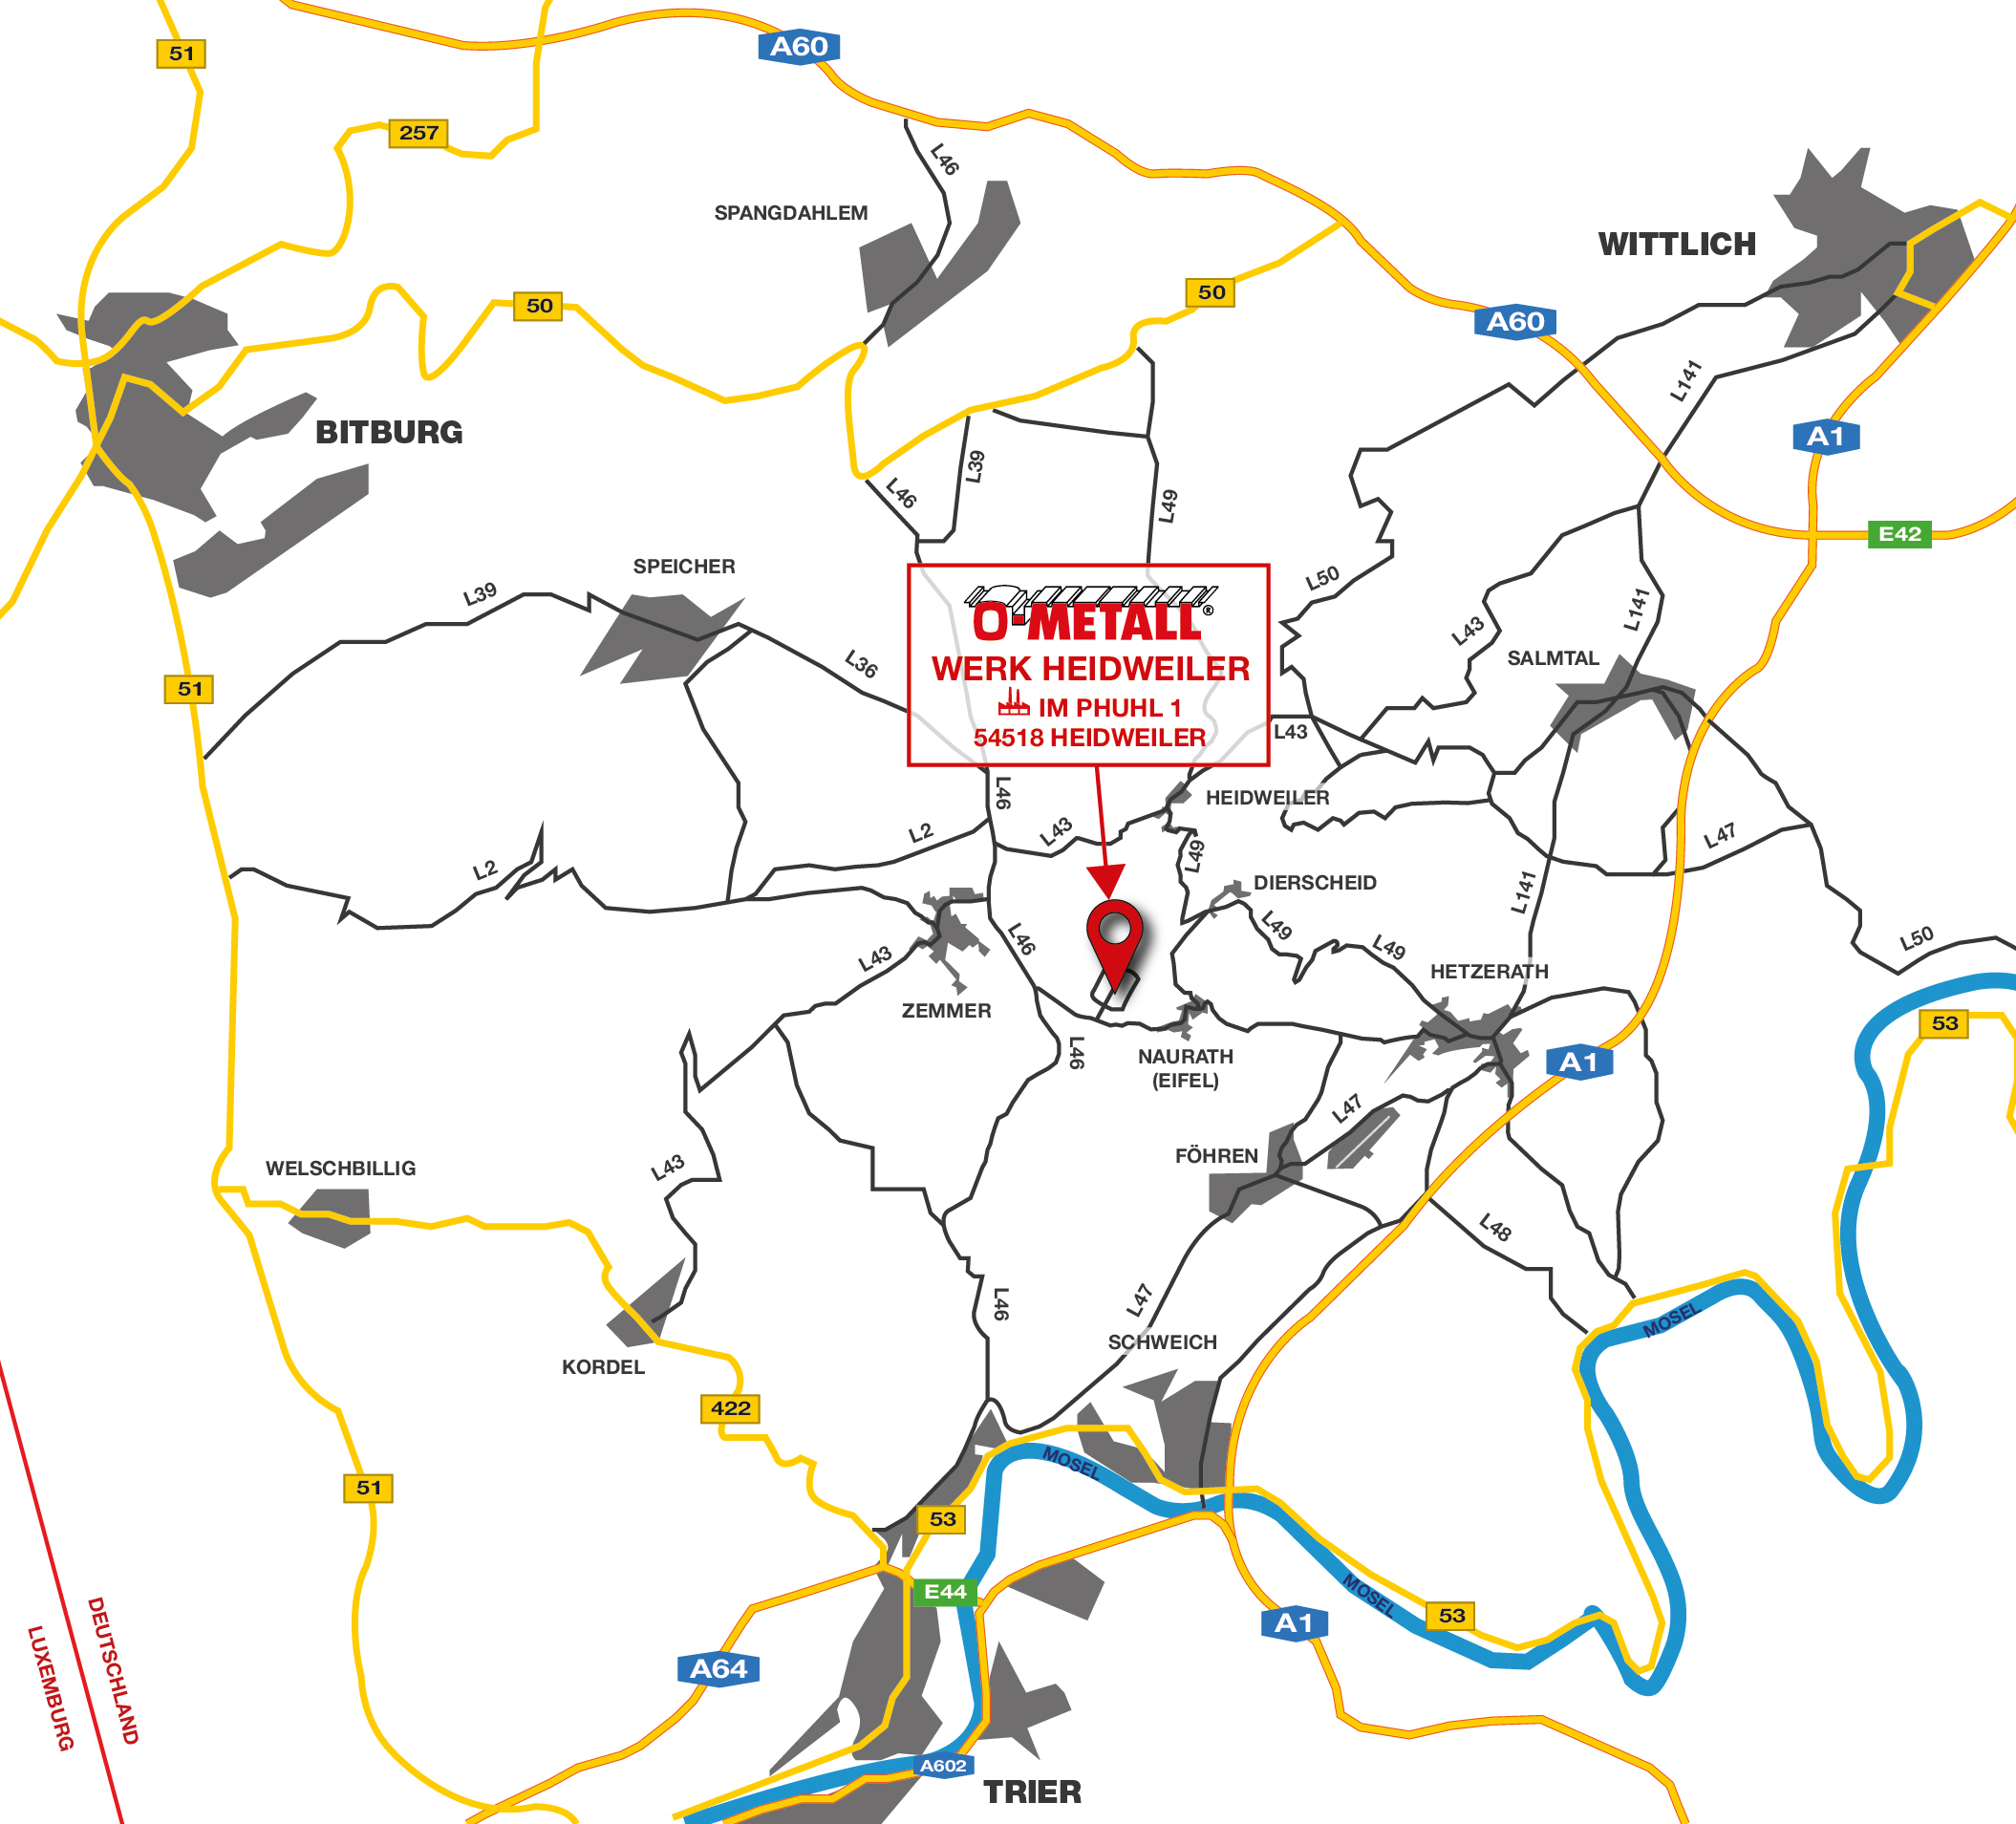 Kartenausschnitt der Region Bitburg, Trier, Wittlich mit Markierung des O-Metall Standorts Heidweiler